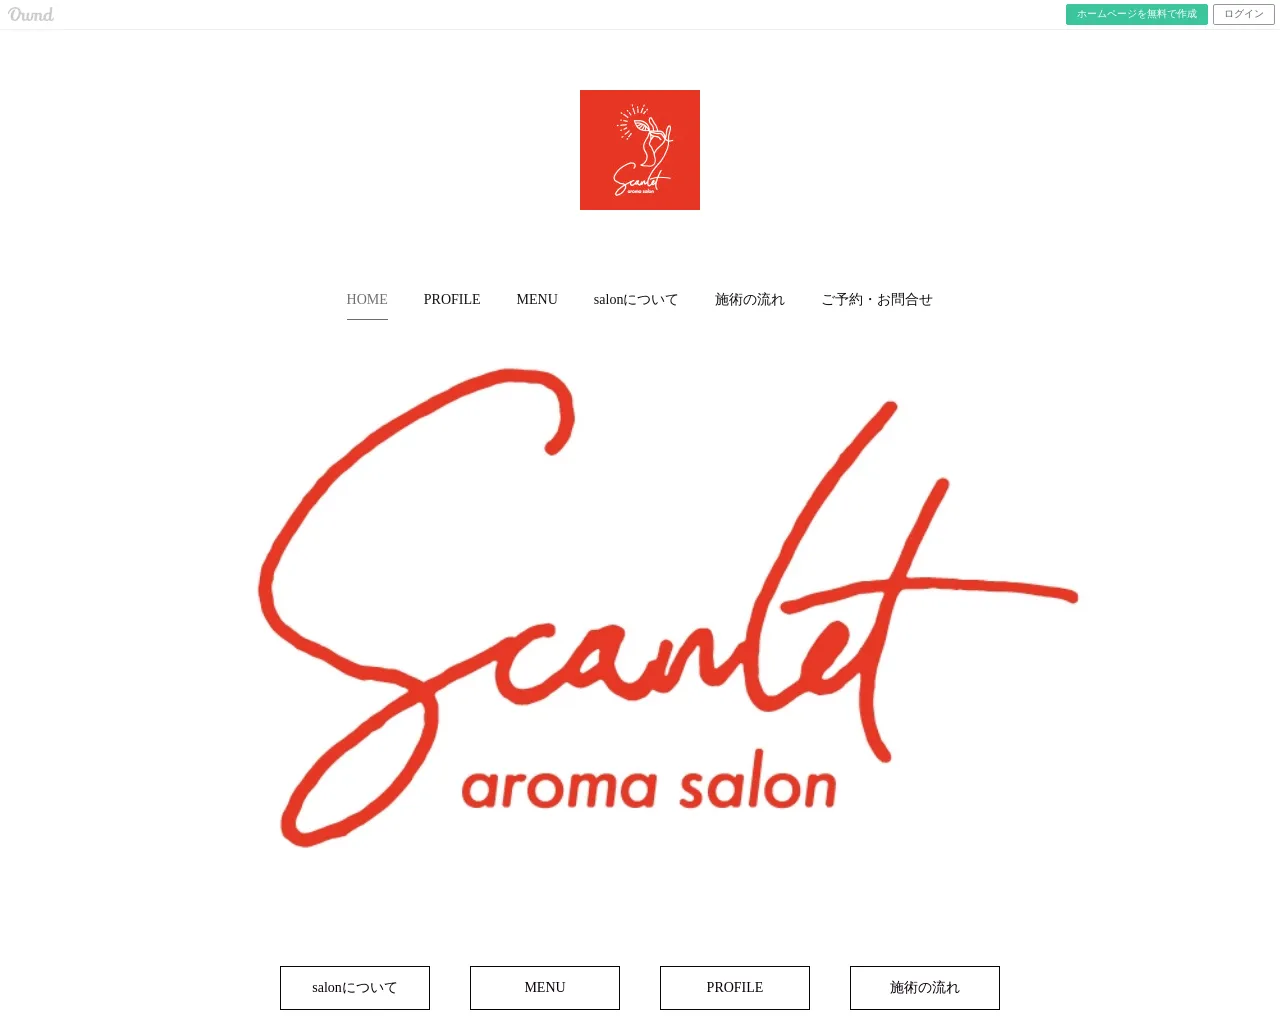 scarlet 〜aroma salon〜(スカーレットアロマサロン) site